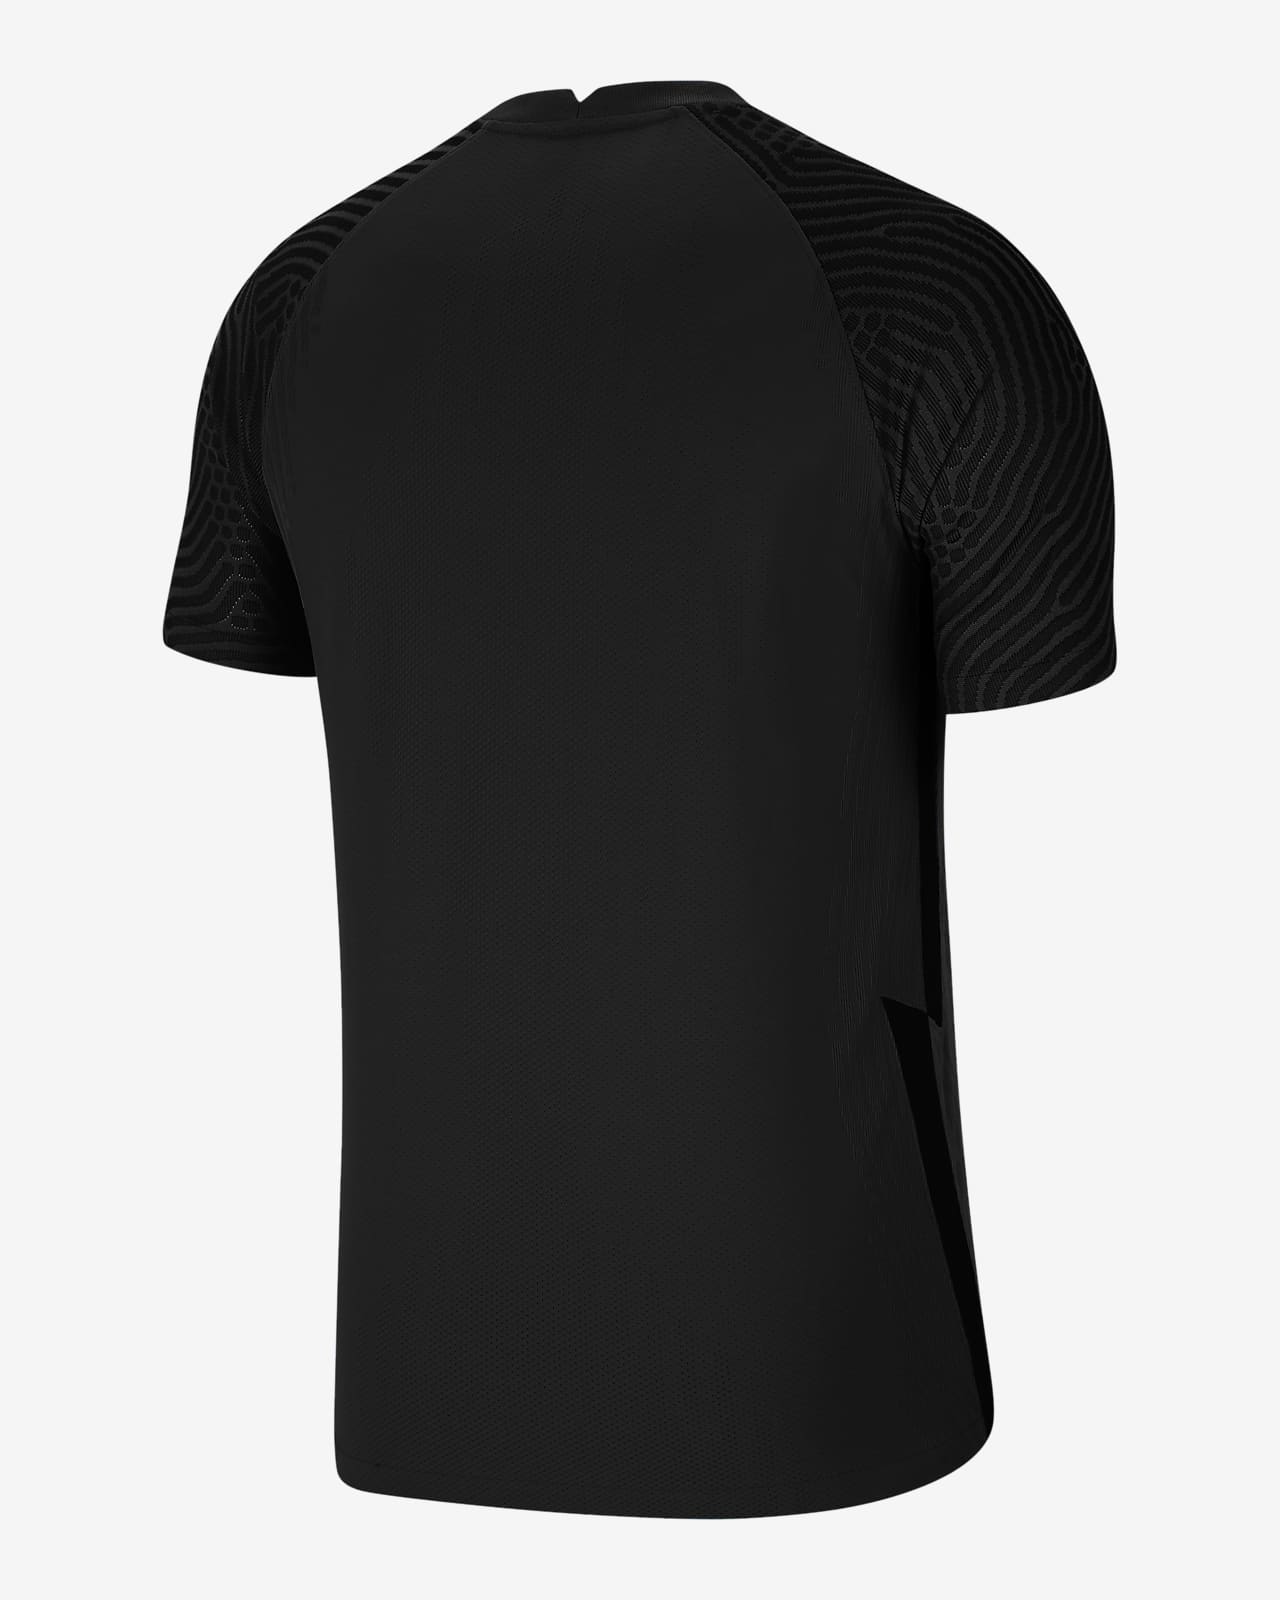 Nike VaporKnit 3 Men's Football Shirt. Nike PT